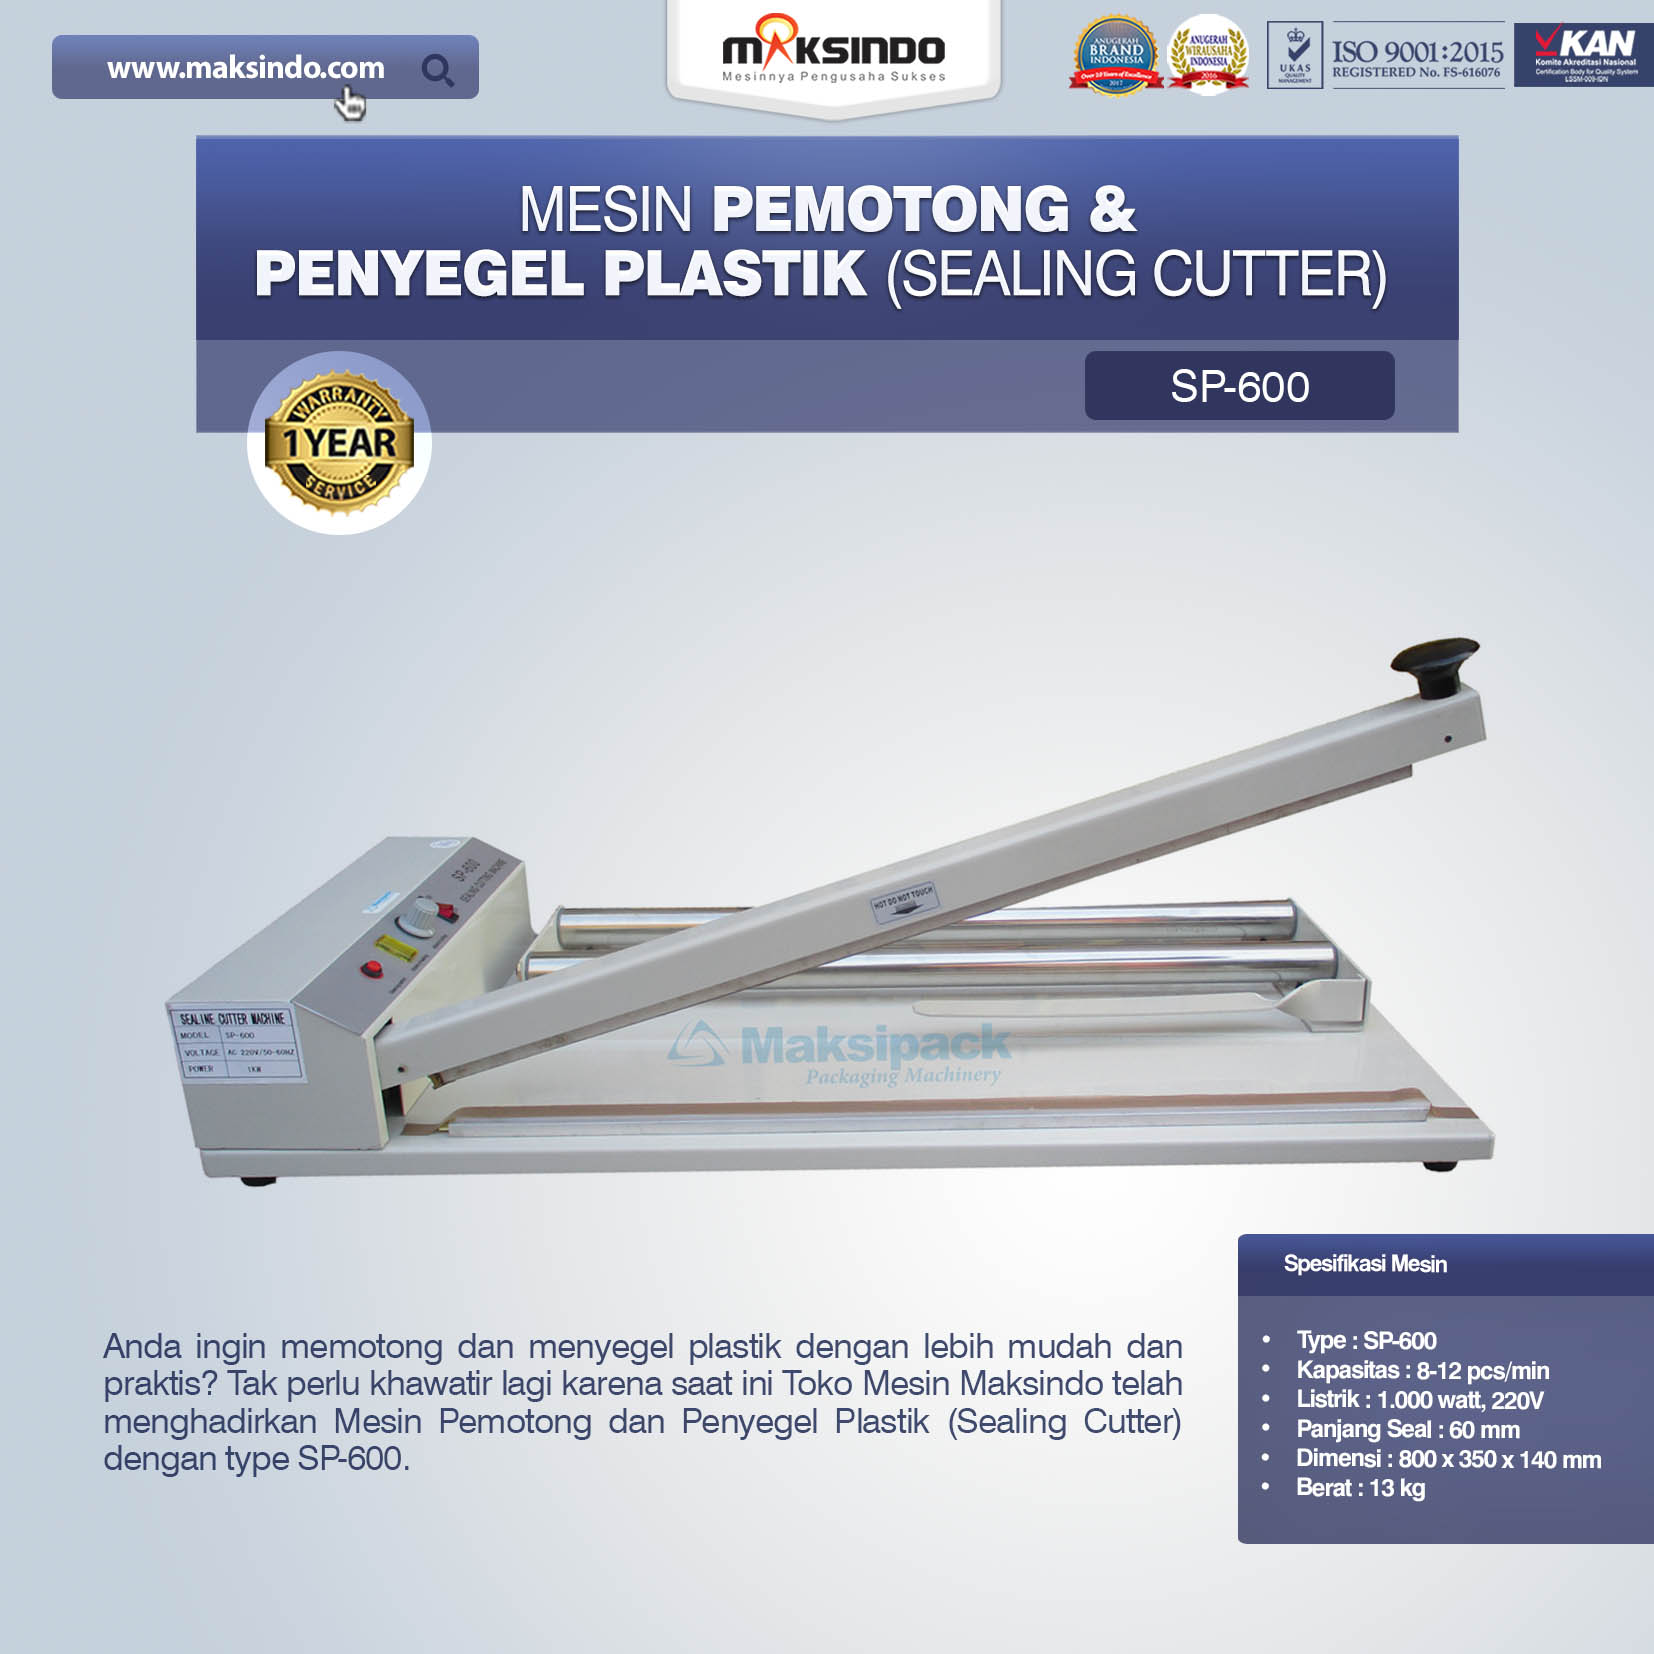 Jual Mesin Pemotong Dan Penyegel Plastik (Sealing Cutter) SP-600 Di Malang